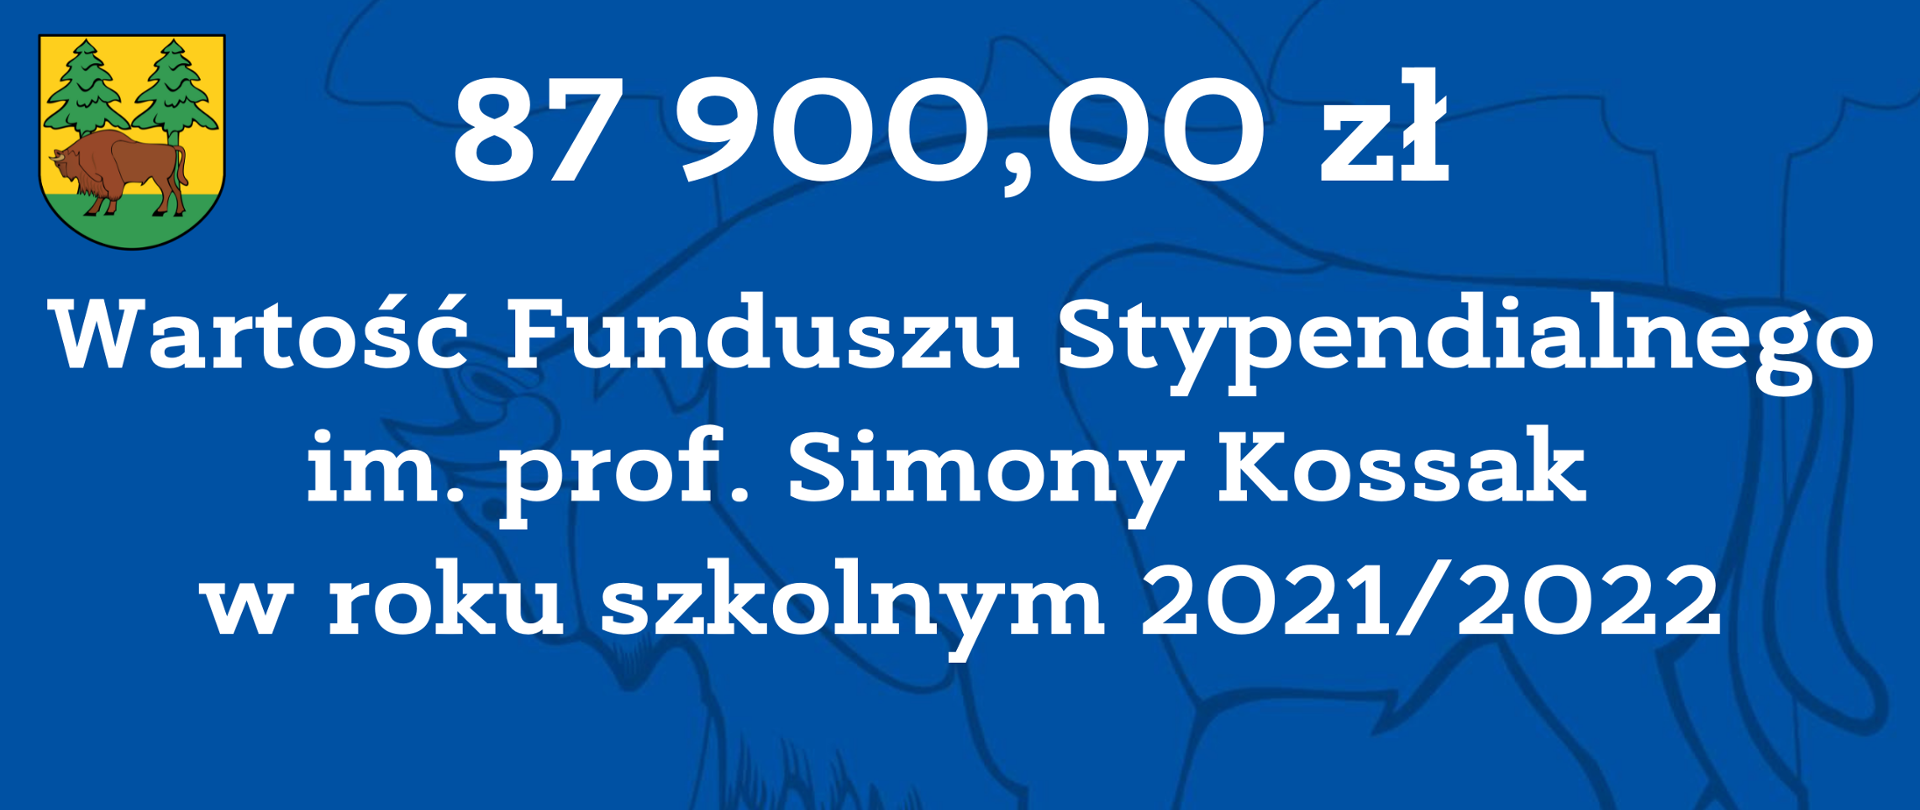 87900,00 wartość Funduszu Stypendialnego im. prof. Simony Kossak w roku szkolnym 2021/2022